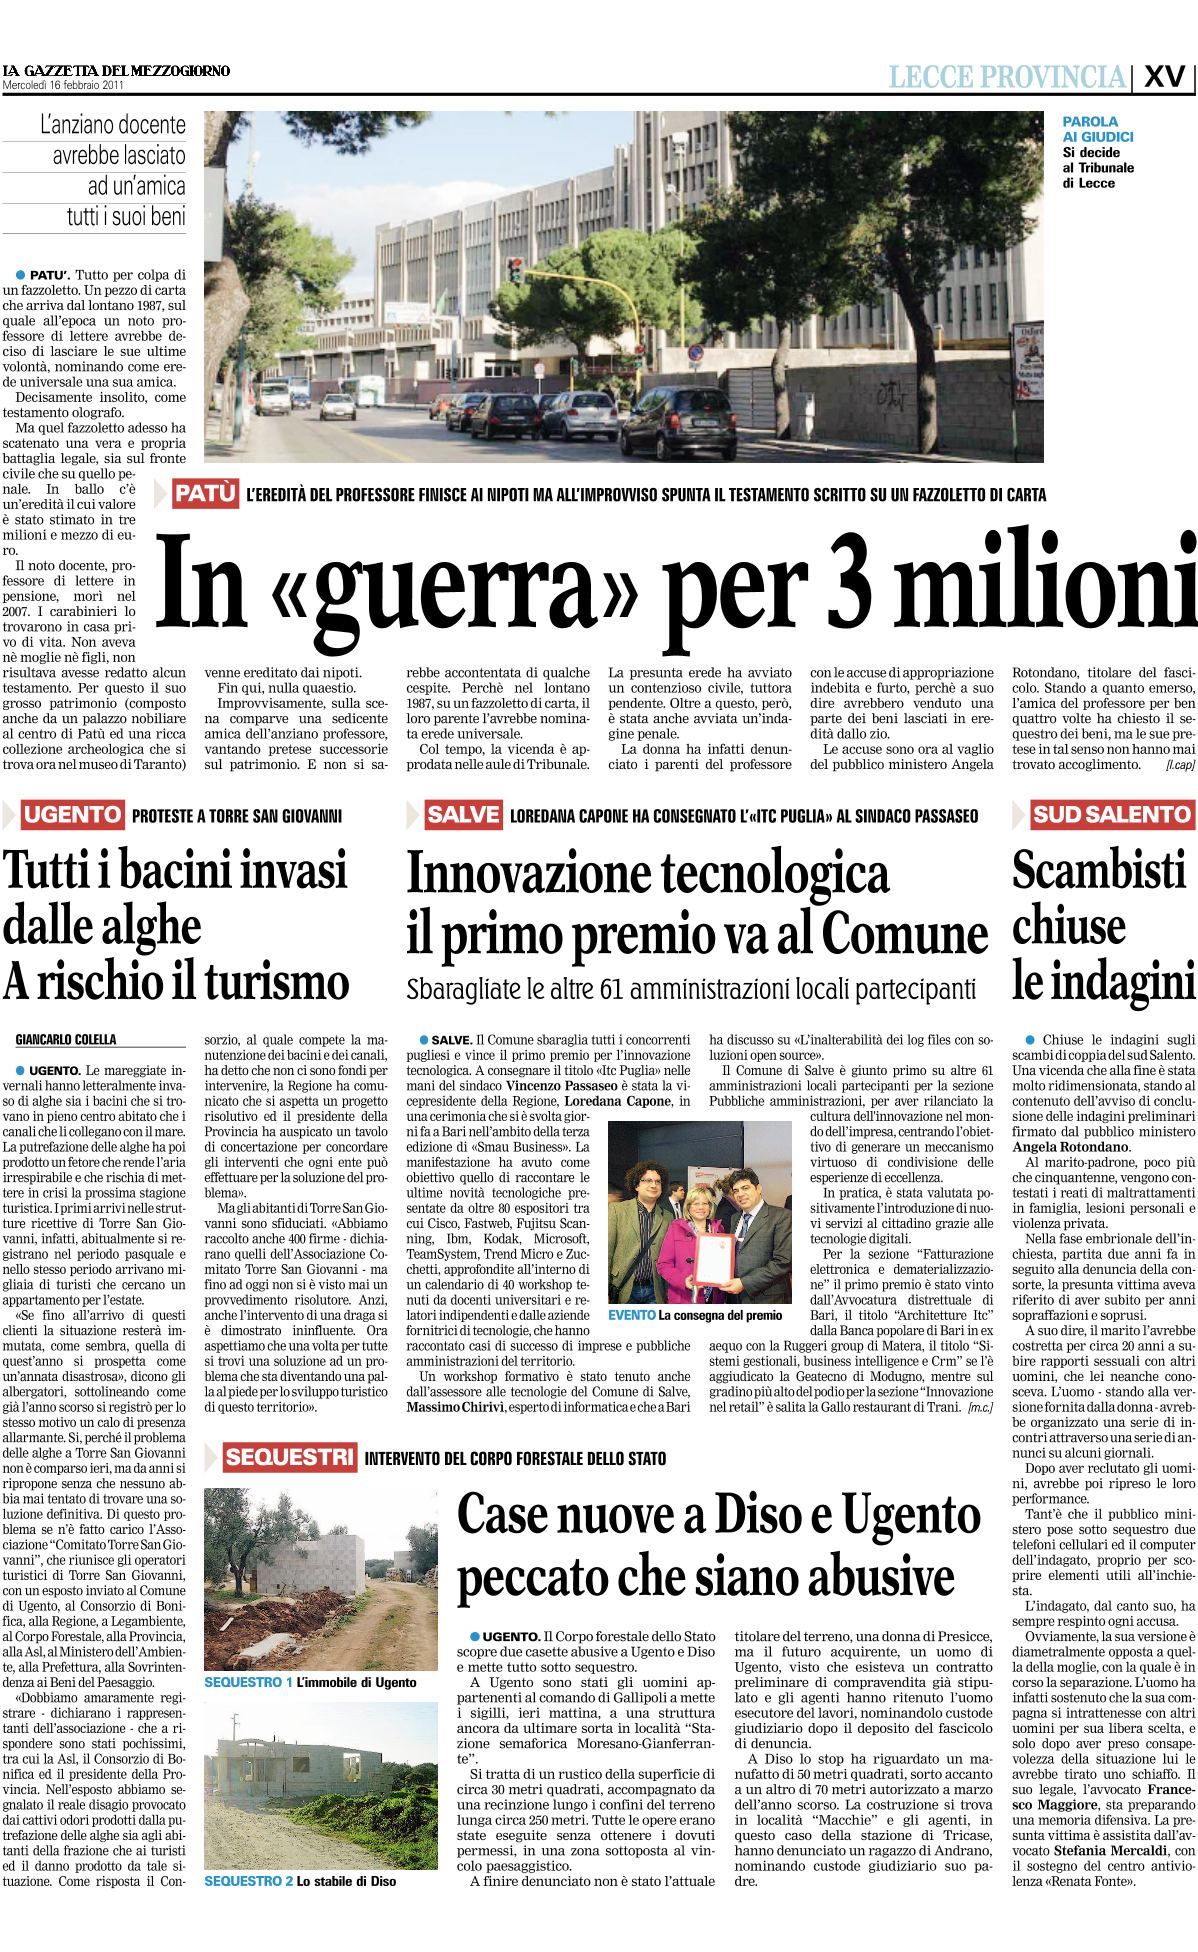 Gazzetta del mezzogiorno - 16/02/2011